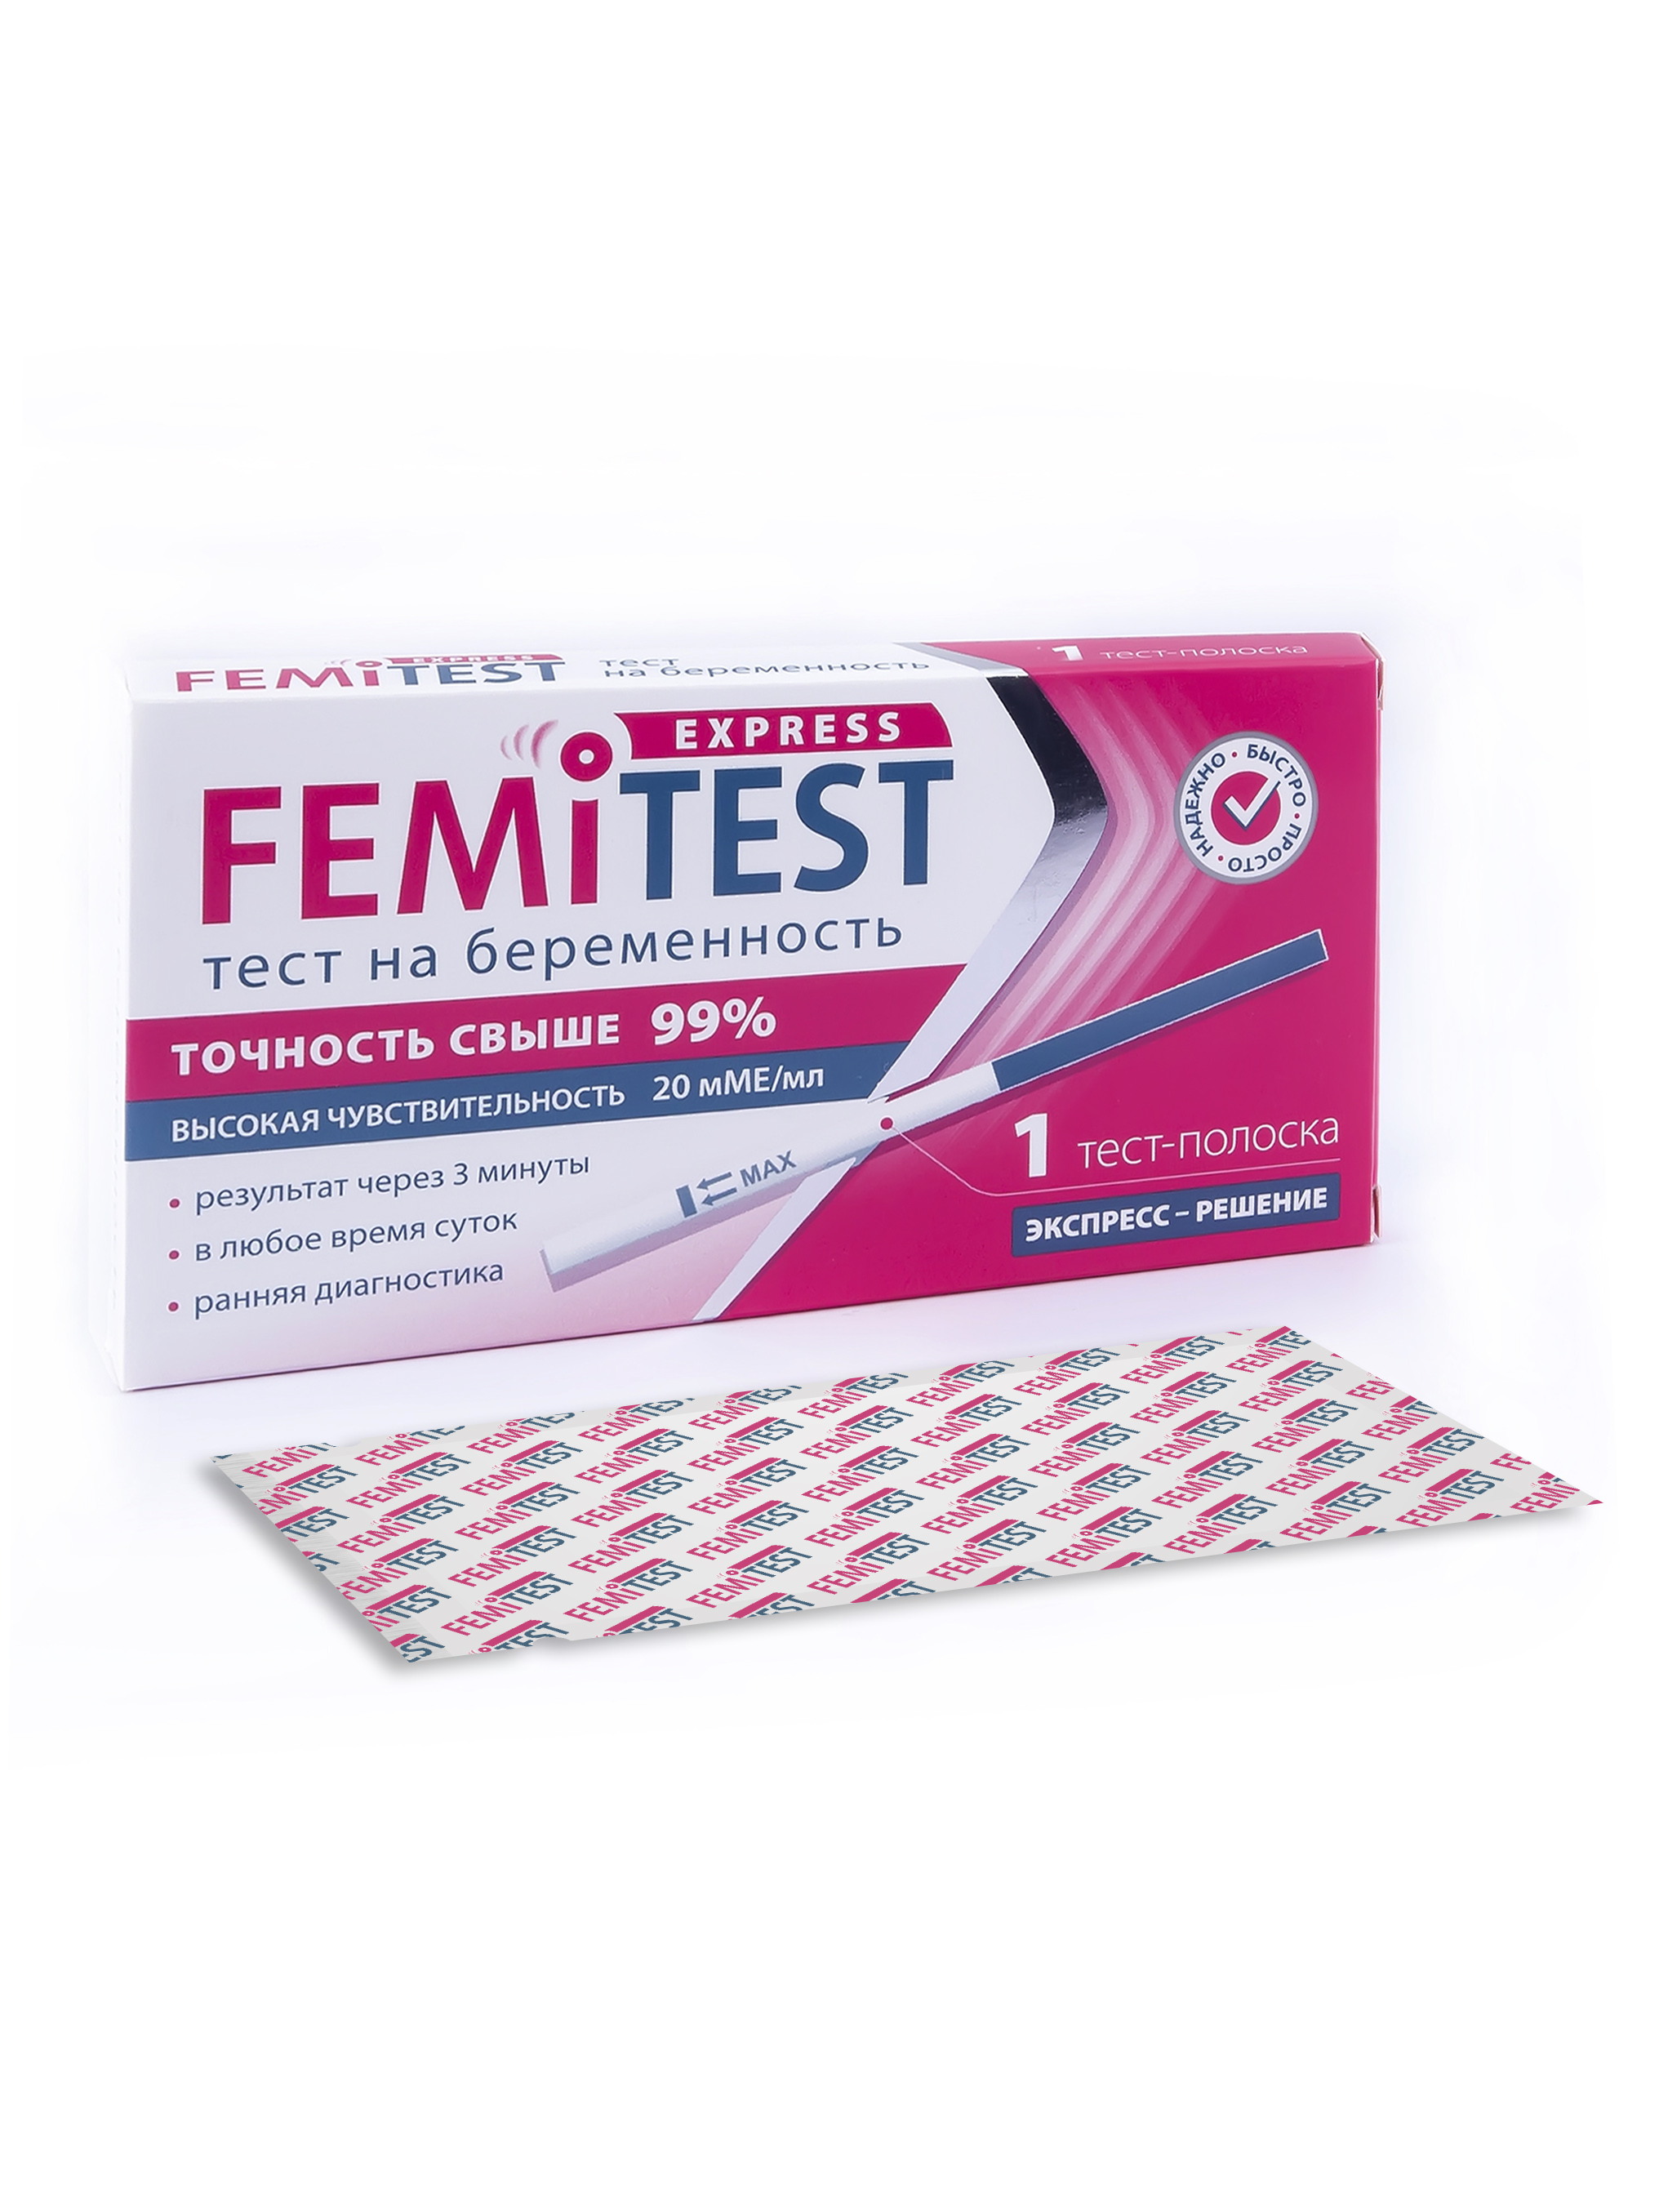 Тест FEMiTEST Express для определения беременности тест-полоска 1 шт.